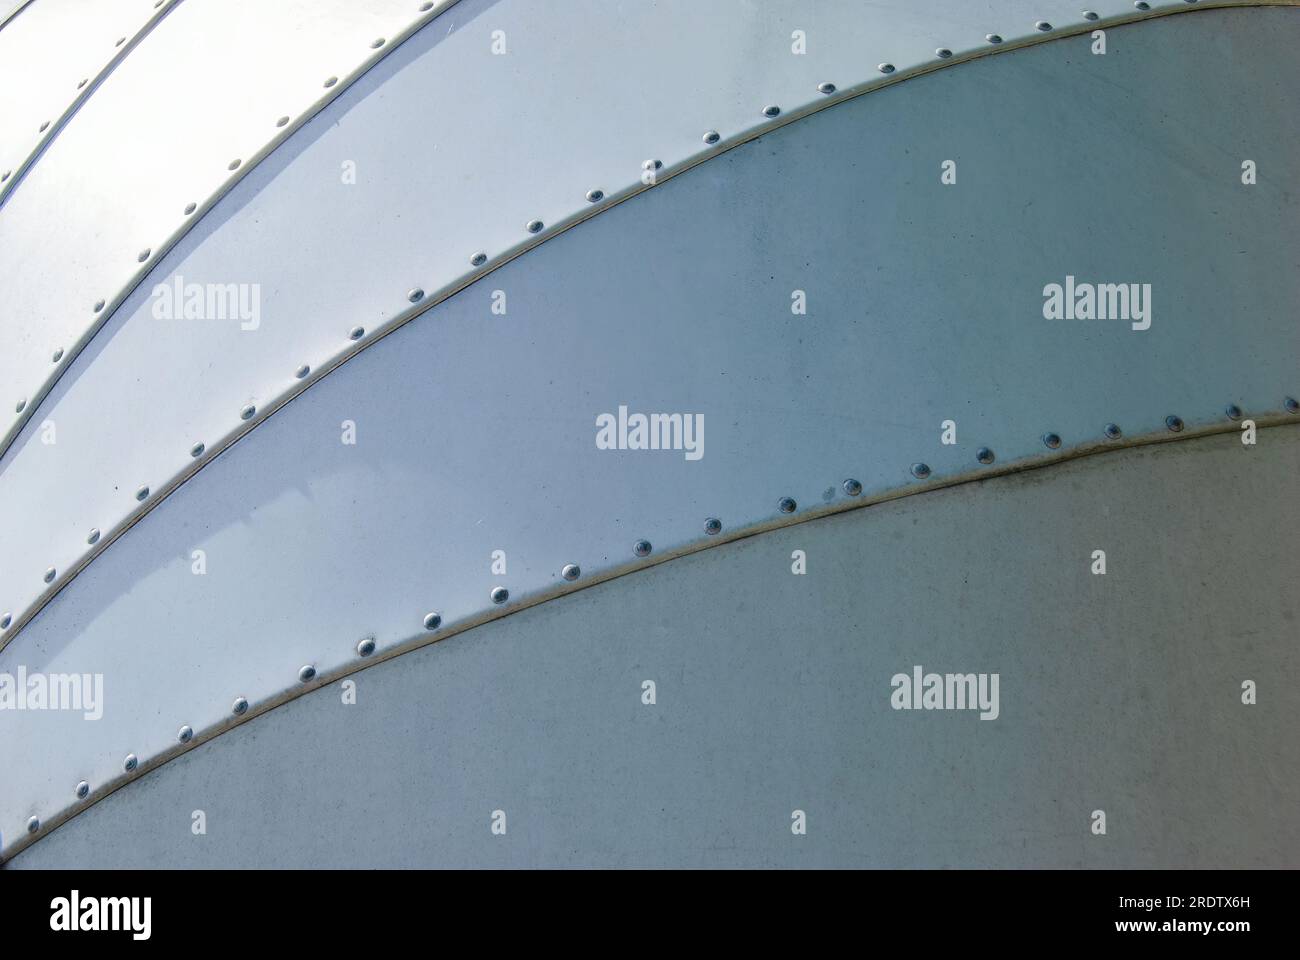 Perspektivische Ansicht Nahaufnahme der Steckdose des Wohnmobils, die an  einem stationären weißen Wohnmobil befestigt ist Stockfotografie - Alamy